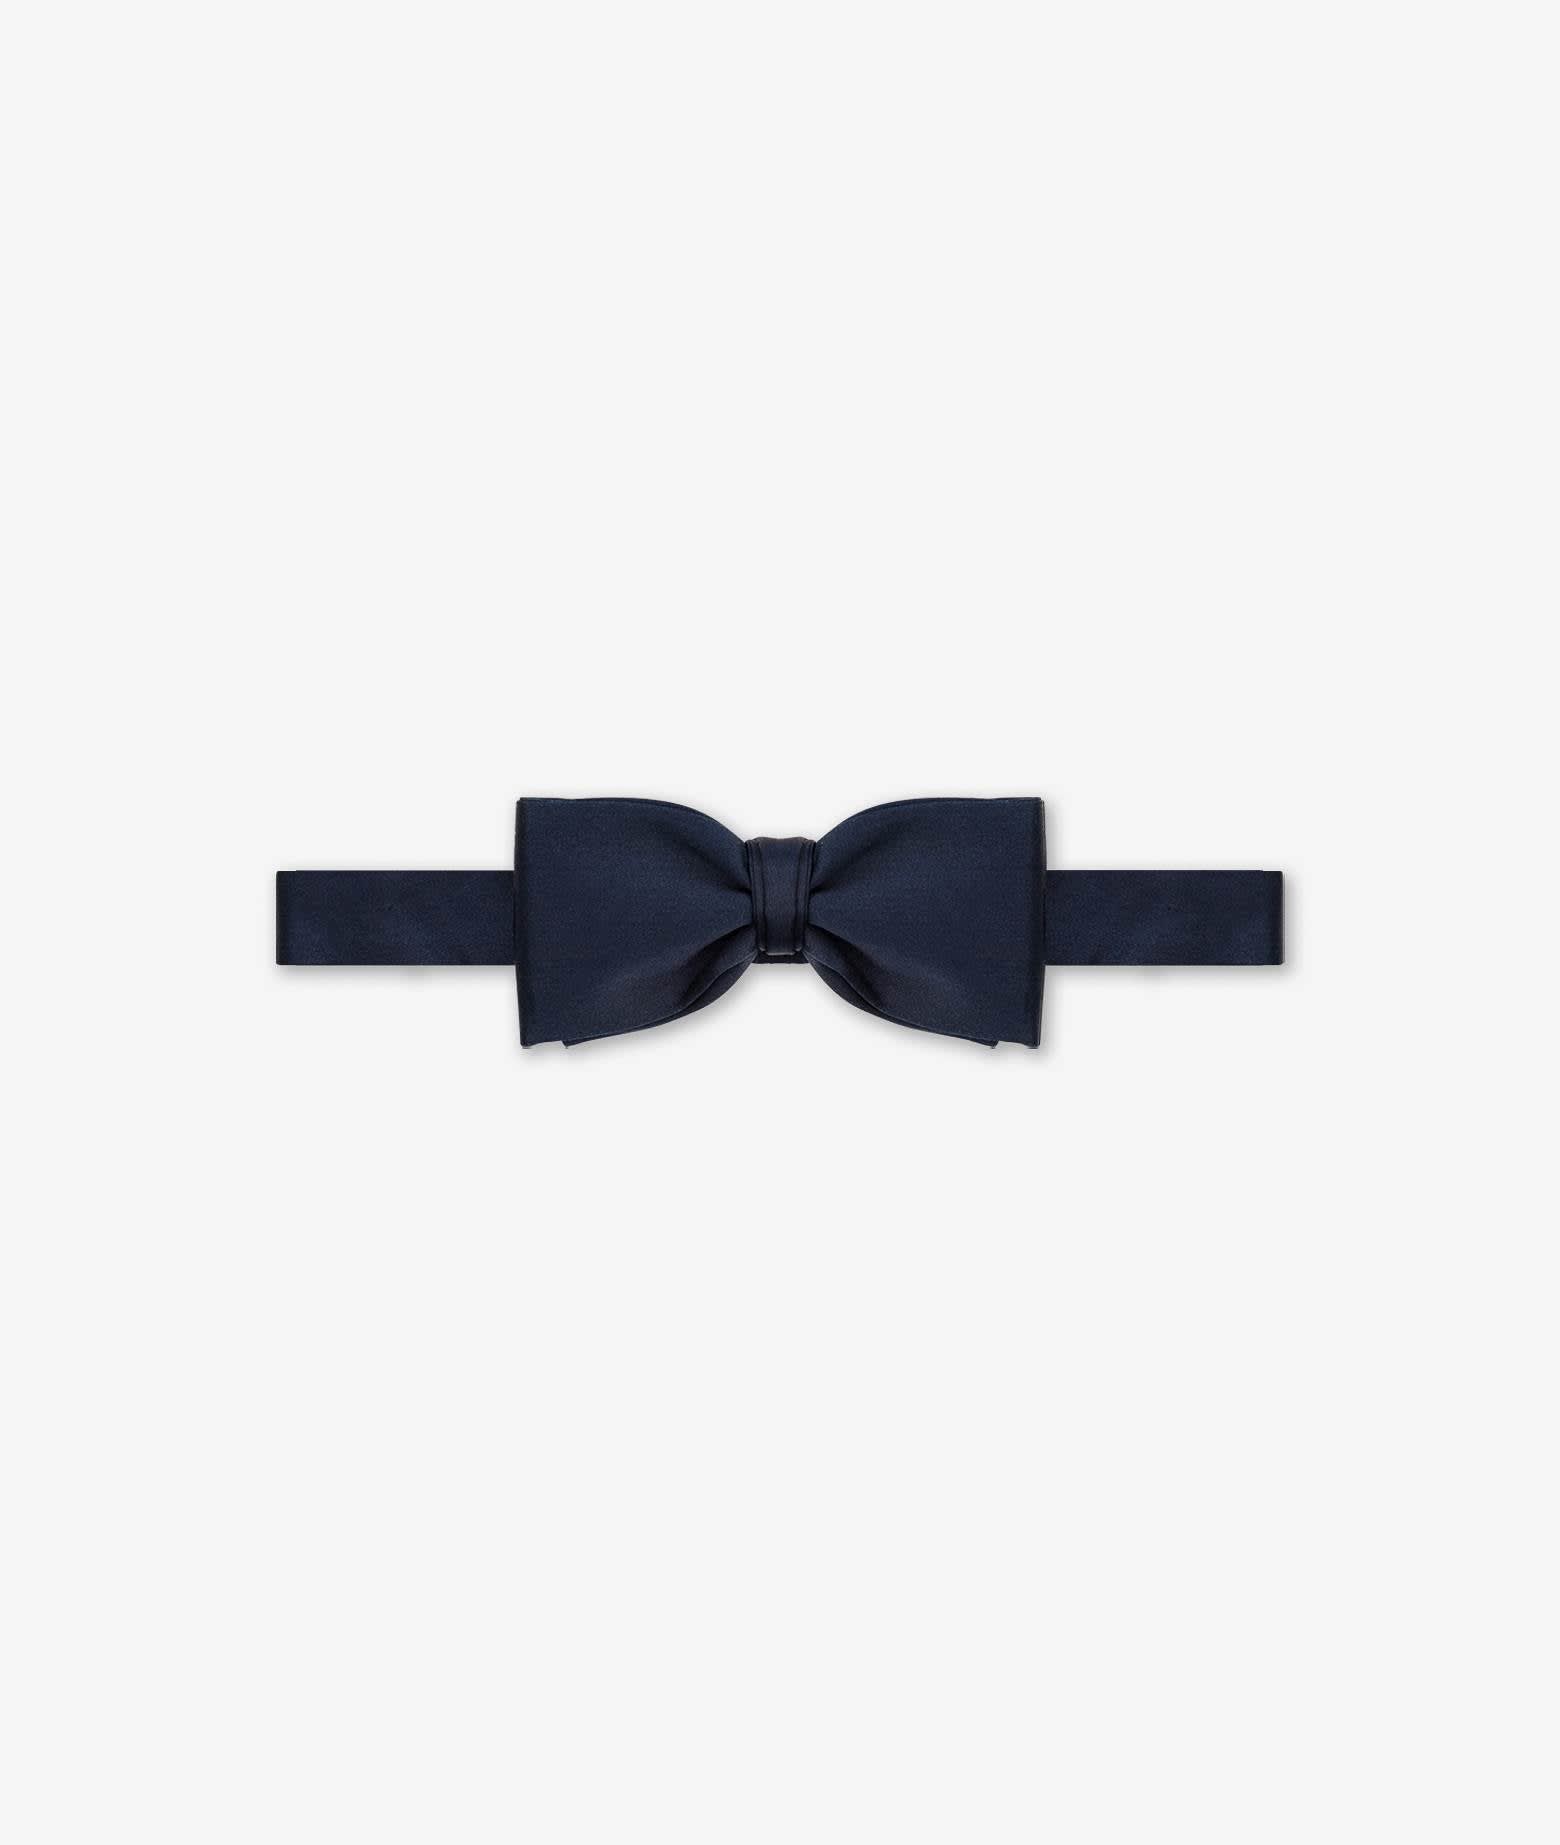 Larusmiani Bow Tie For Tuxedo Tie In Blue